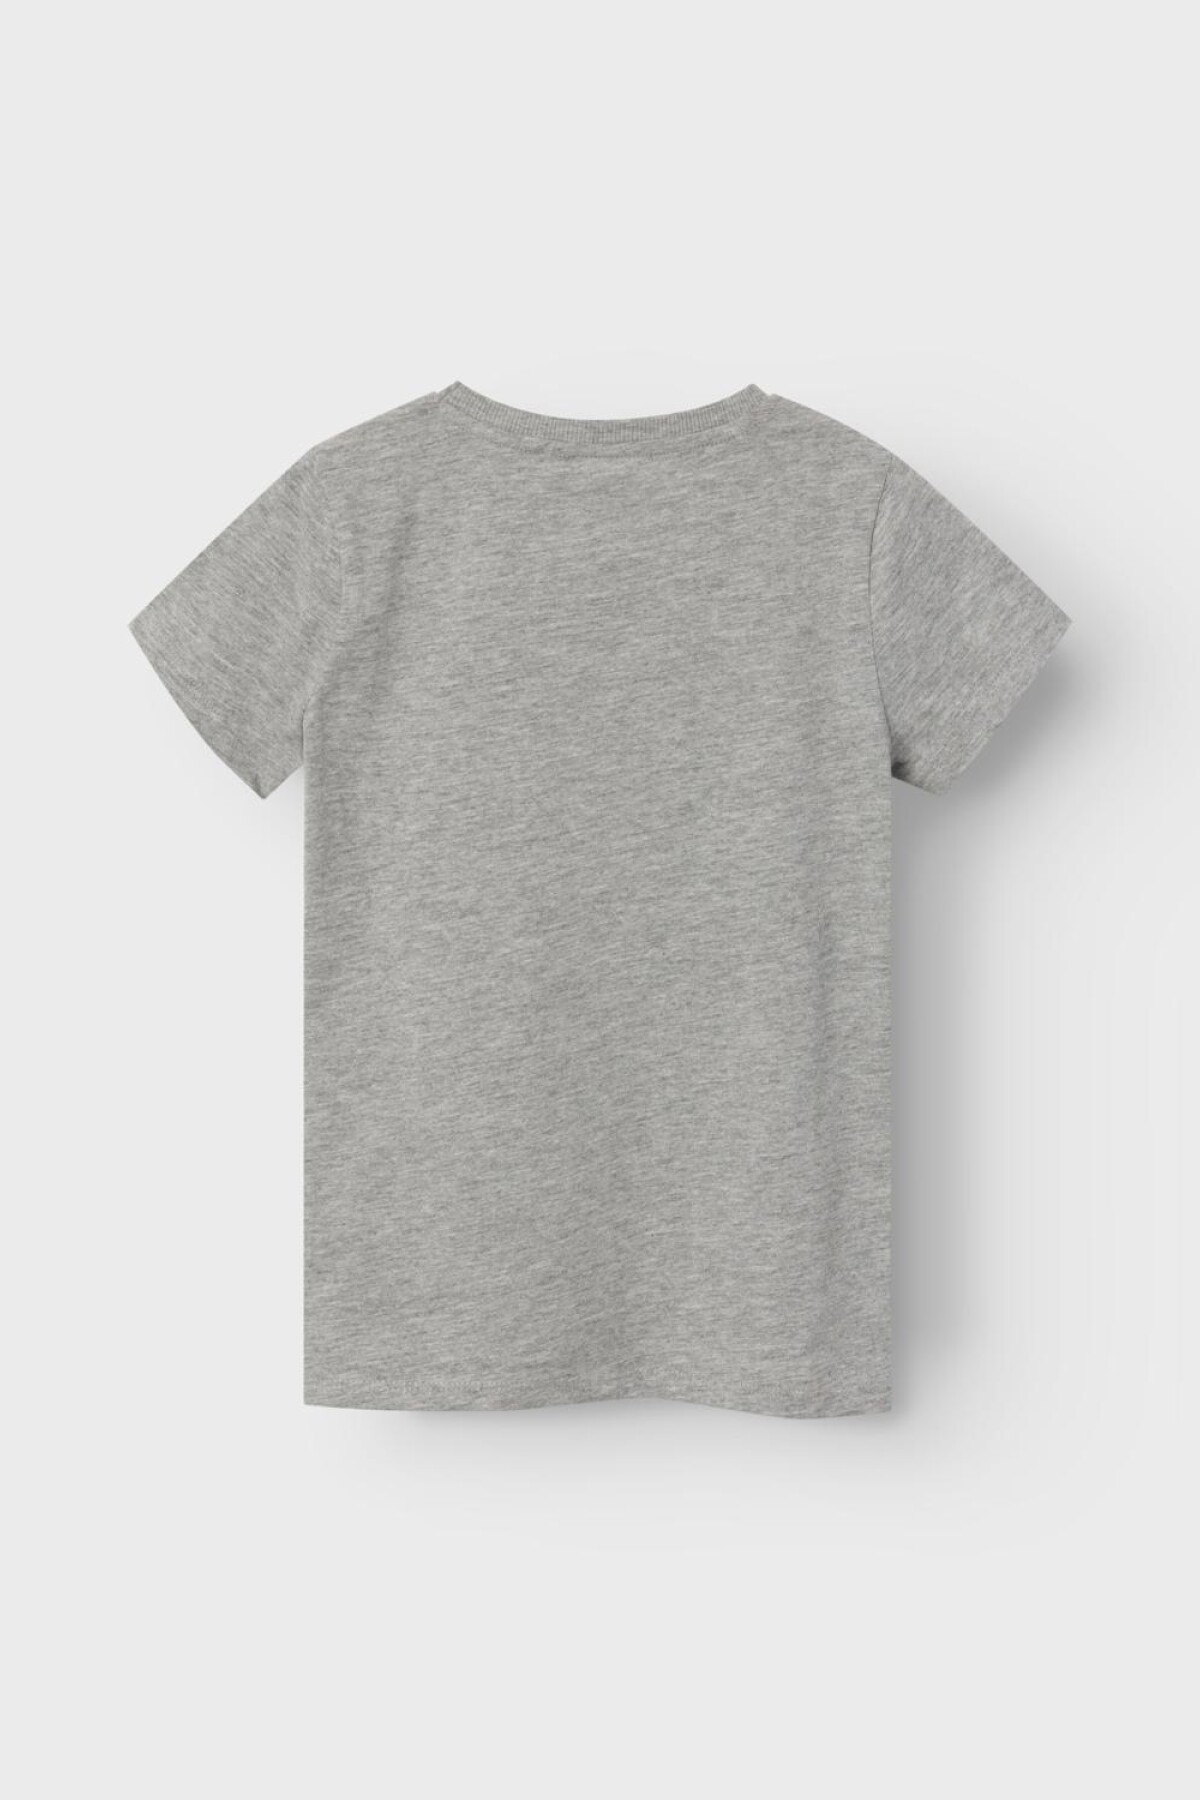 Camiseta Lamaja Grey Melange